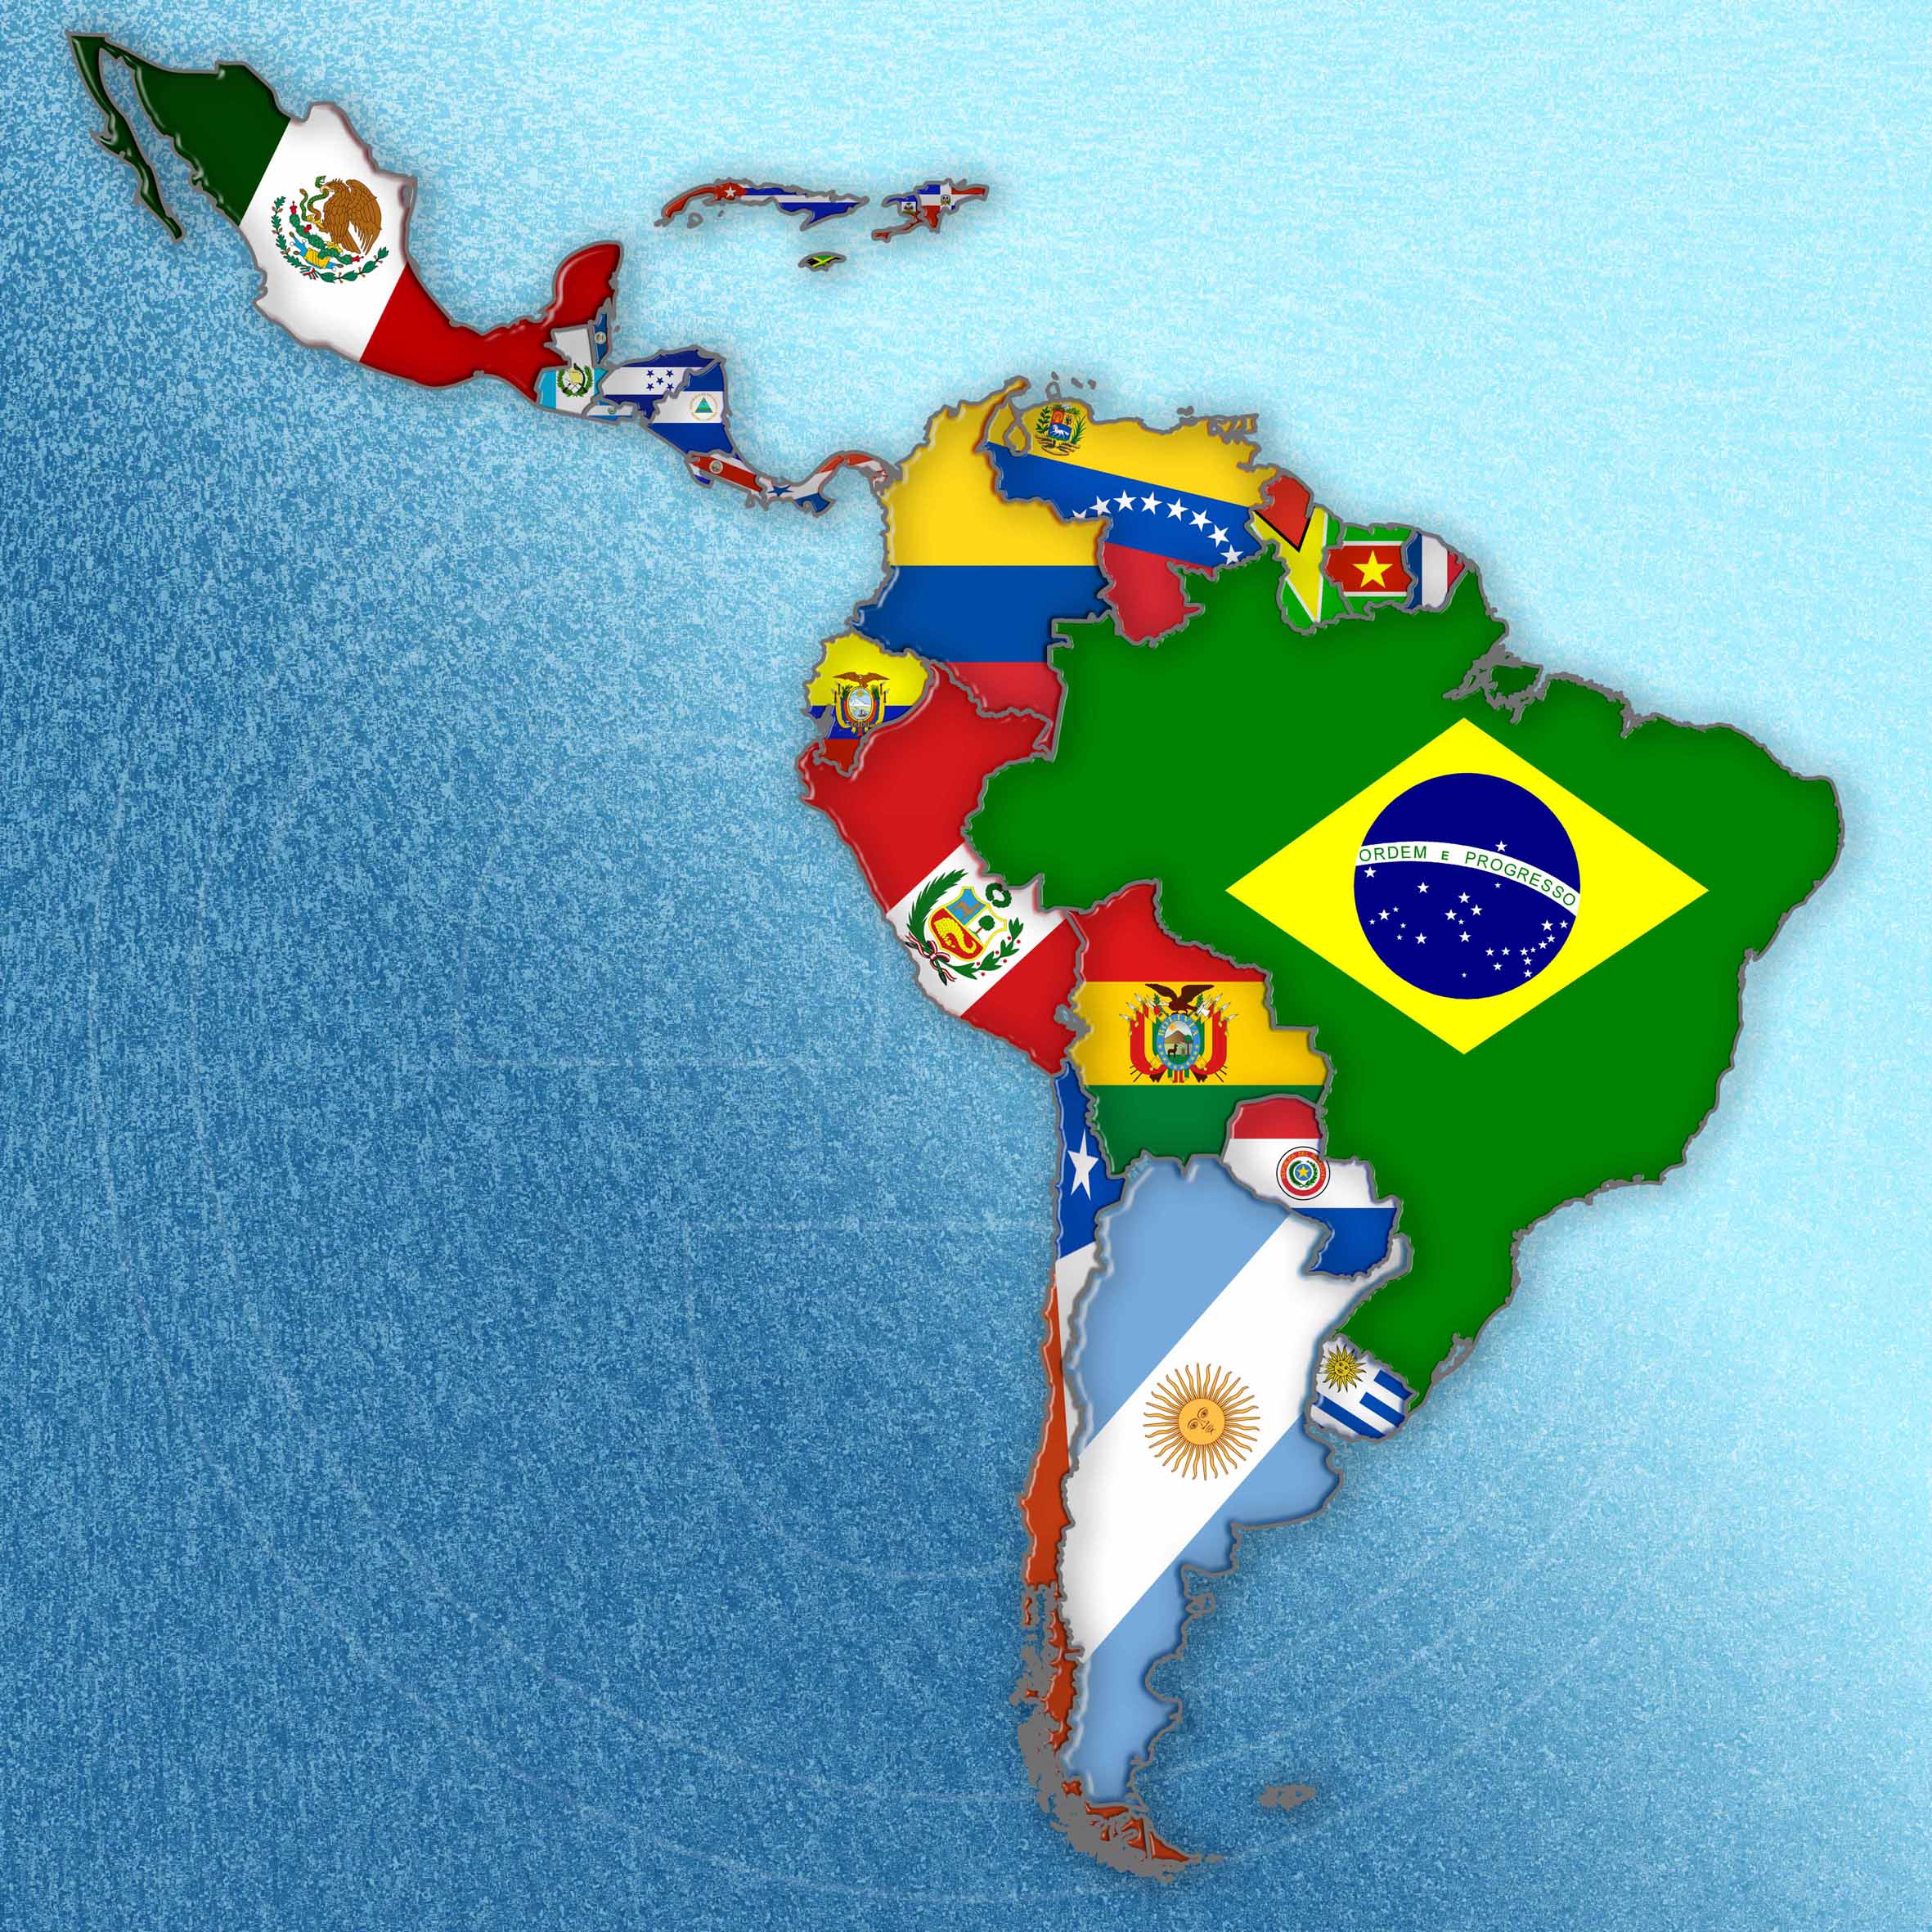 Prevalencia de hipertensión arterial en niños y adolescentes de América Latina: revisión sistemática y metaanálisis